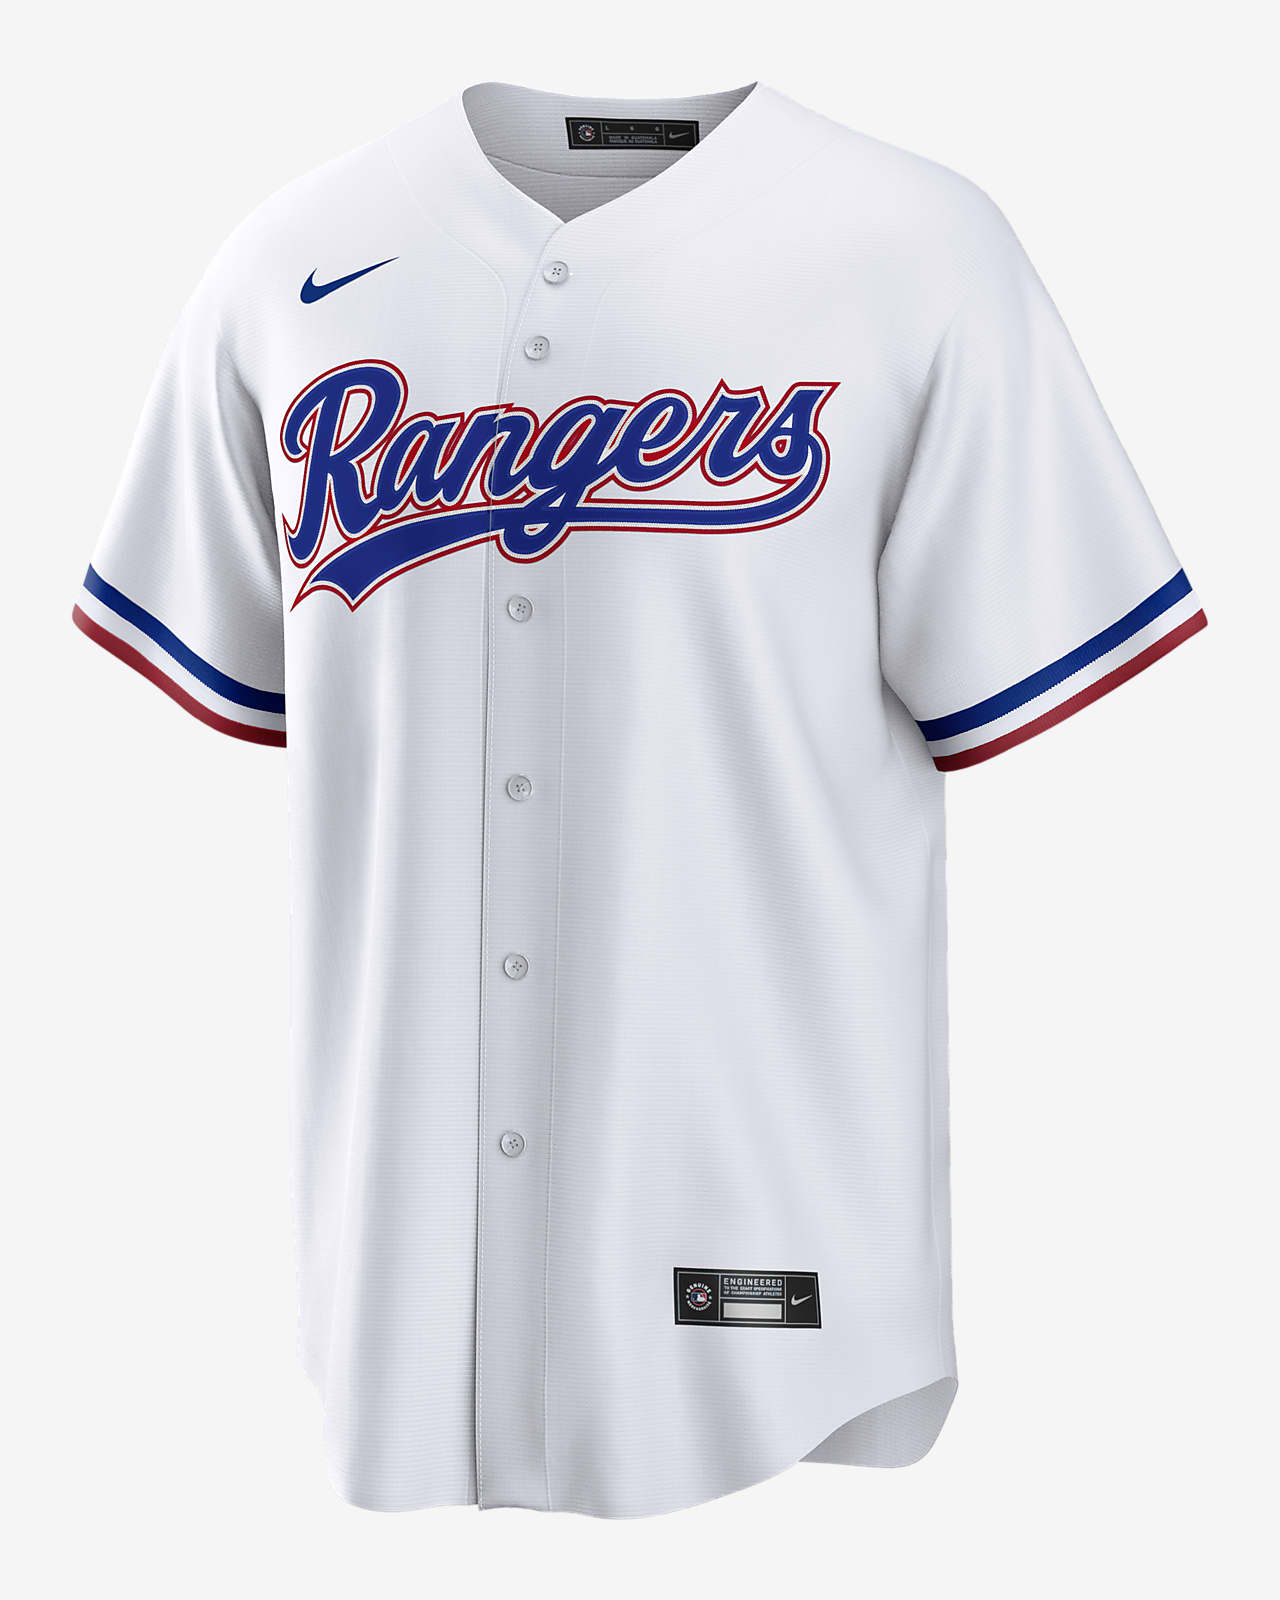 Nike Baseball Uniforms 2020 | lupon.gov.ph